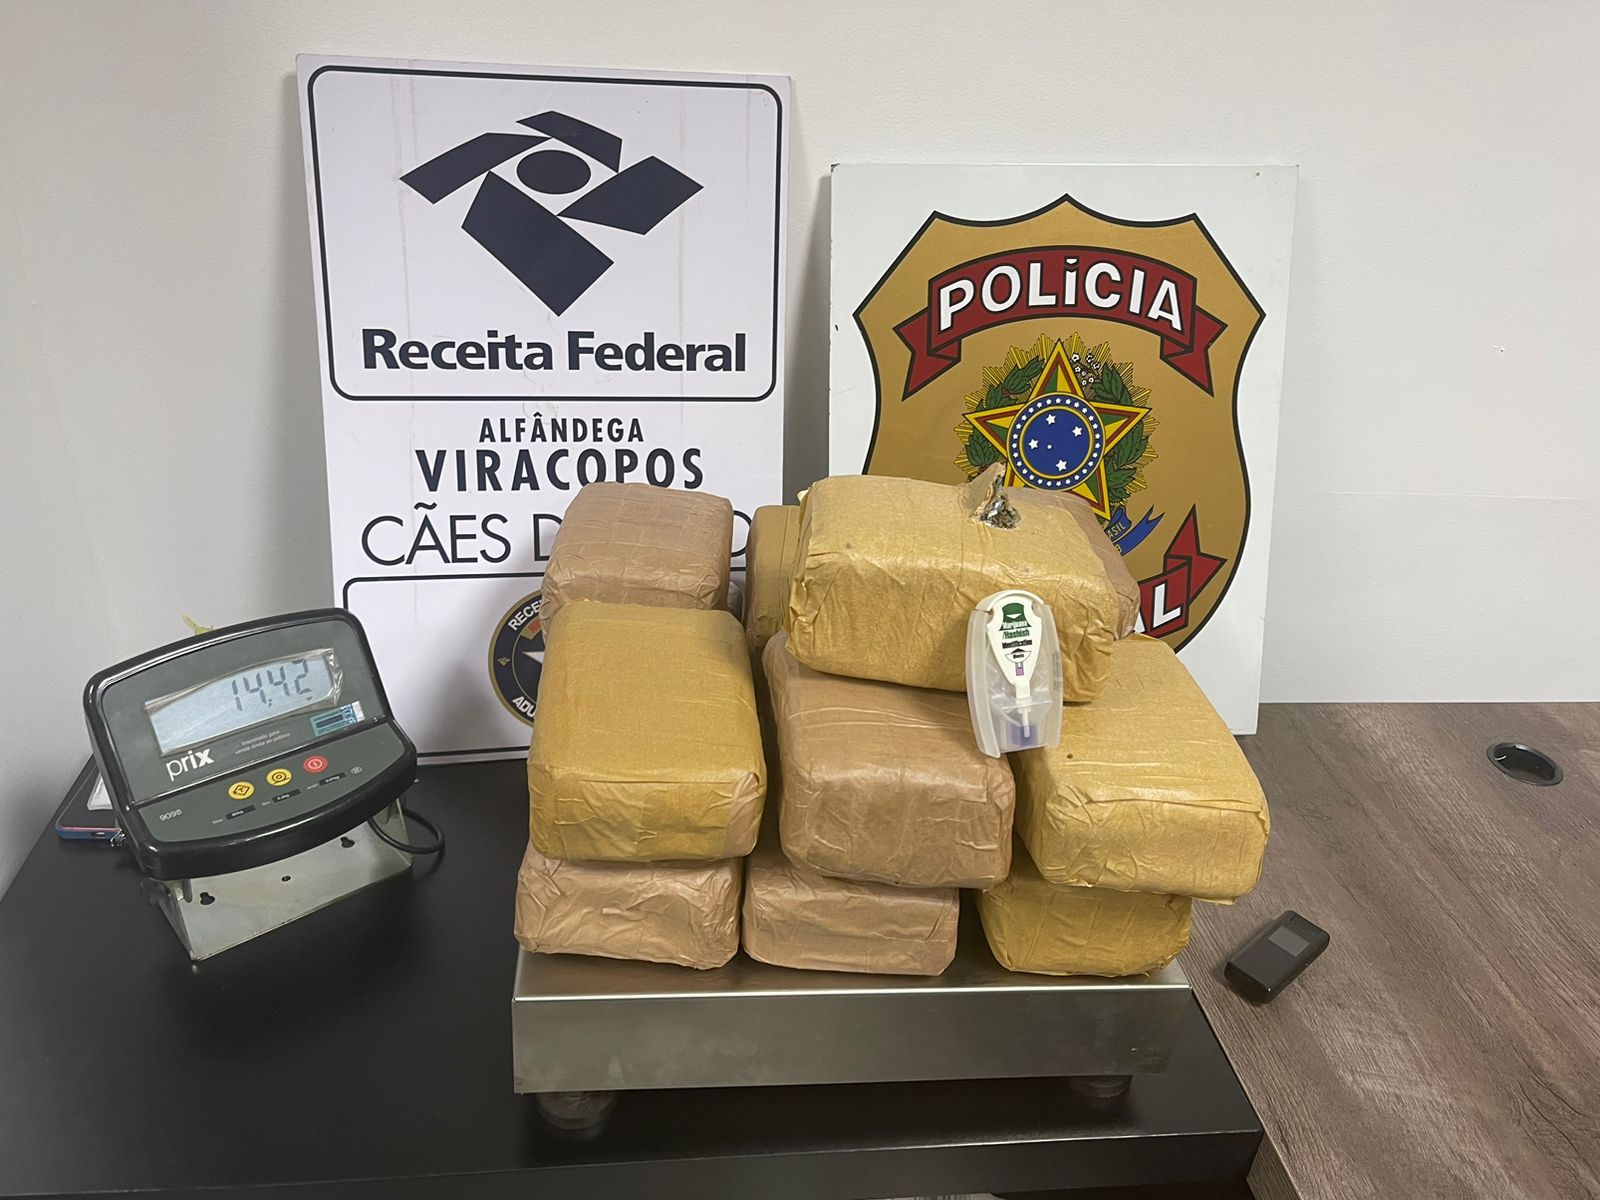 PF confisca 15 kg de entorpecentes na bagagem de passageira em Viracopos